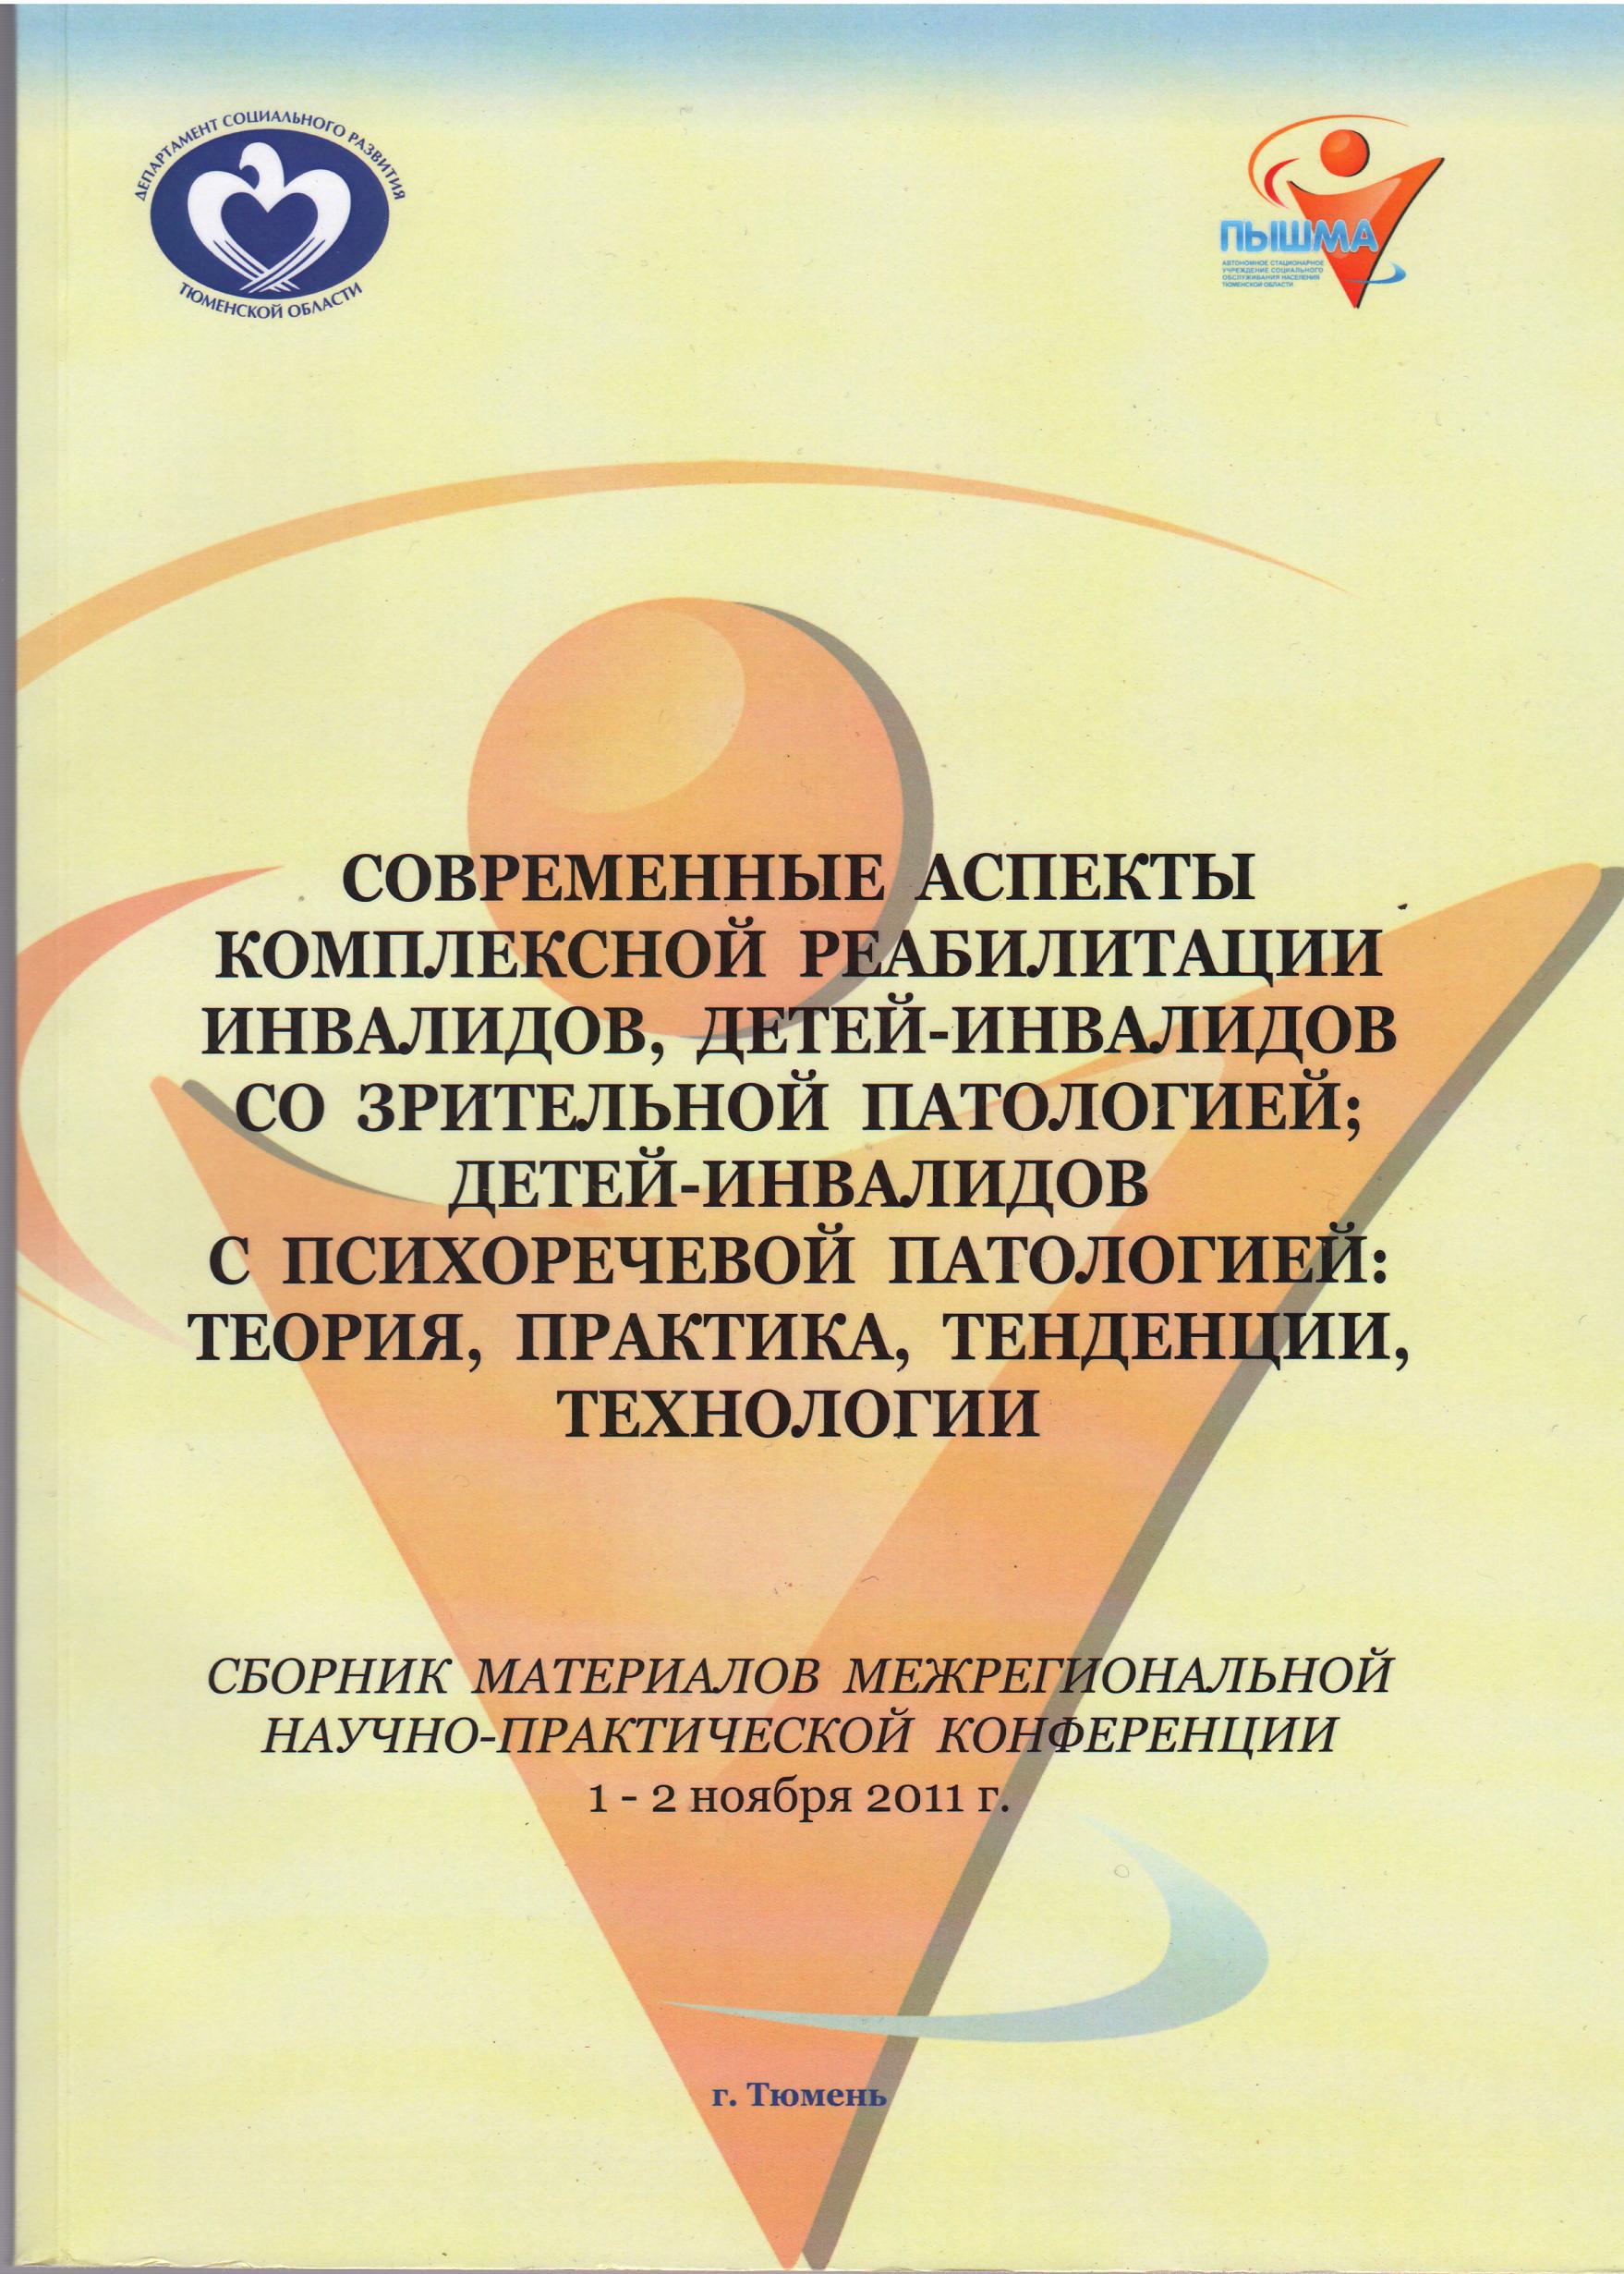 Публикация в сборнике материалов Межрегиональной научно-практической конференции, г.Тюмень, 2011г.